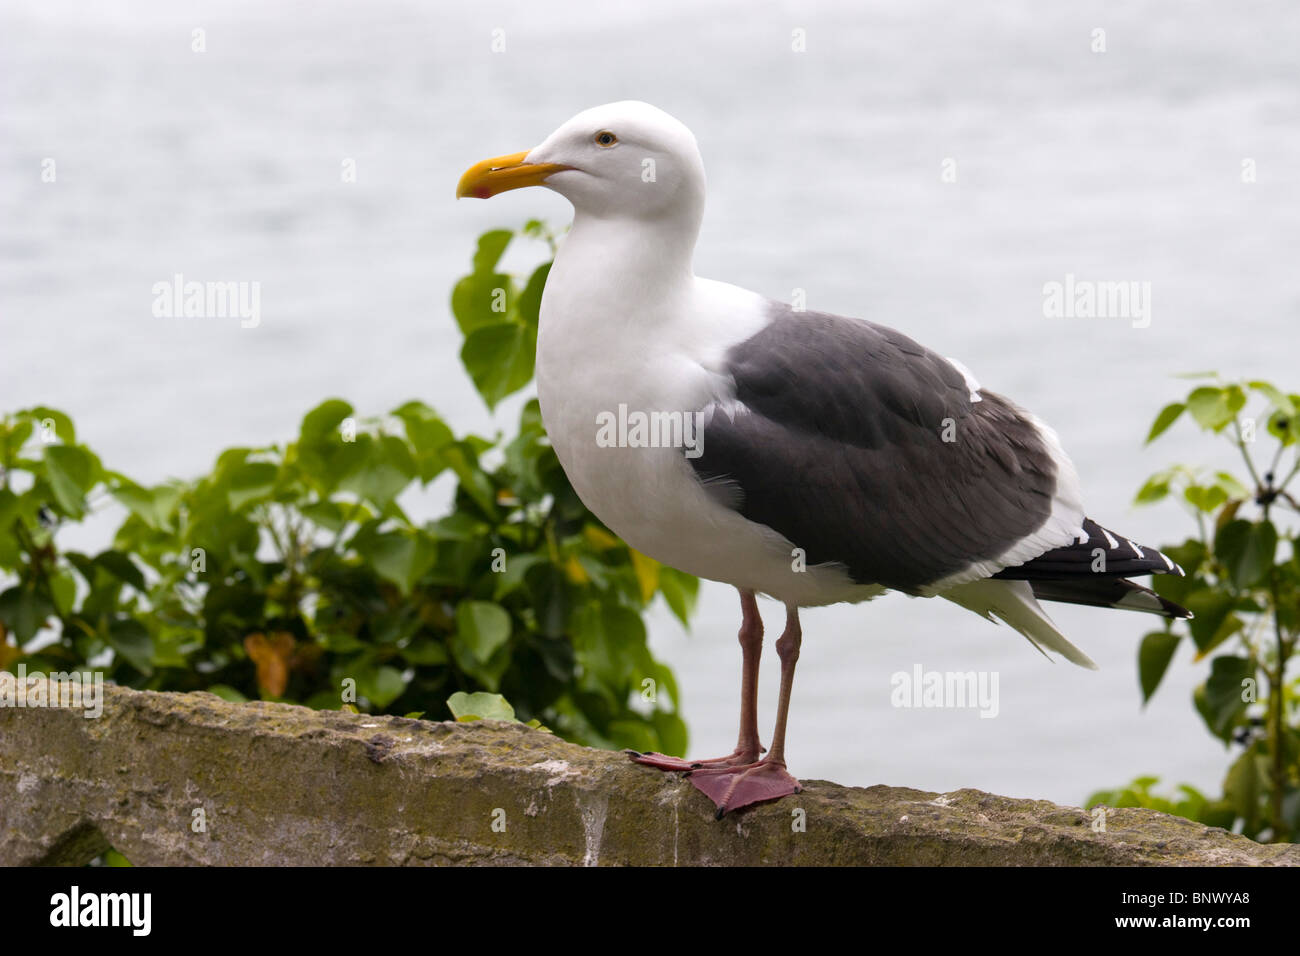 Typical acquatic bird in Alcatraz penitentiary island Stock Photo